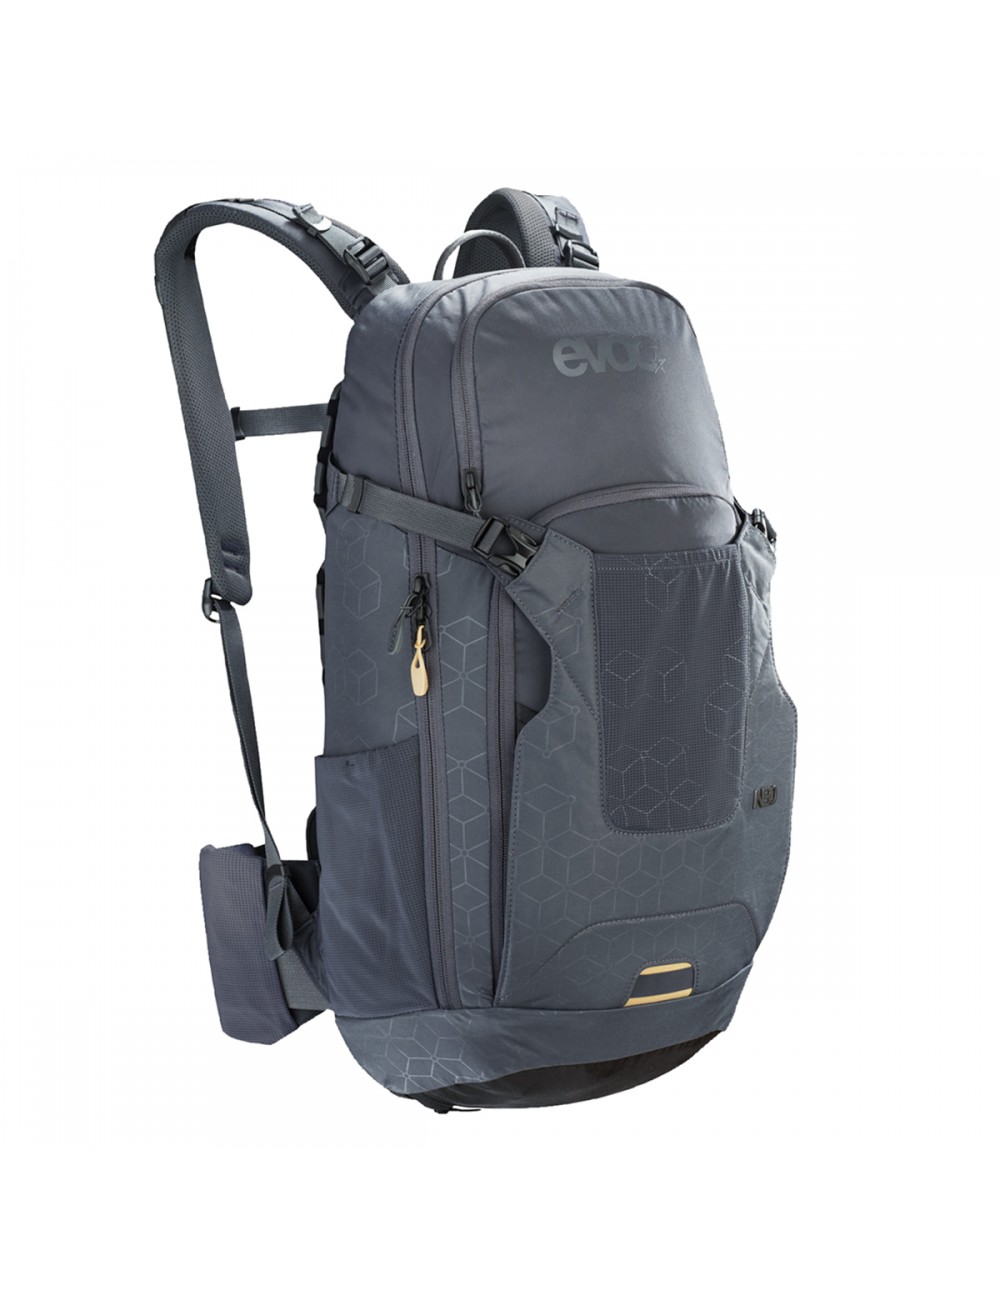 Evoc Neo 16L Backpack - Carbon Grey